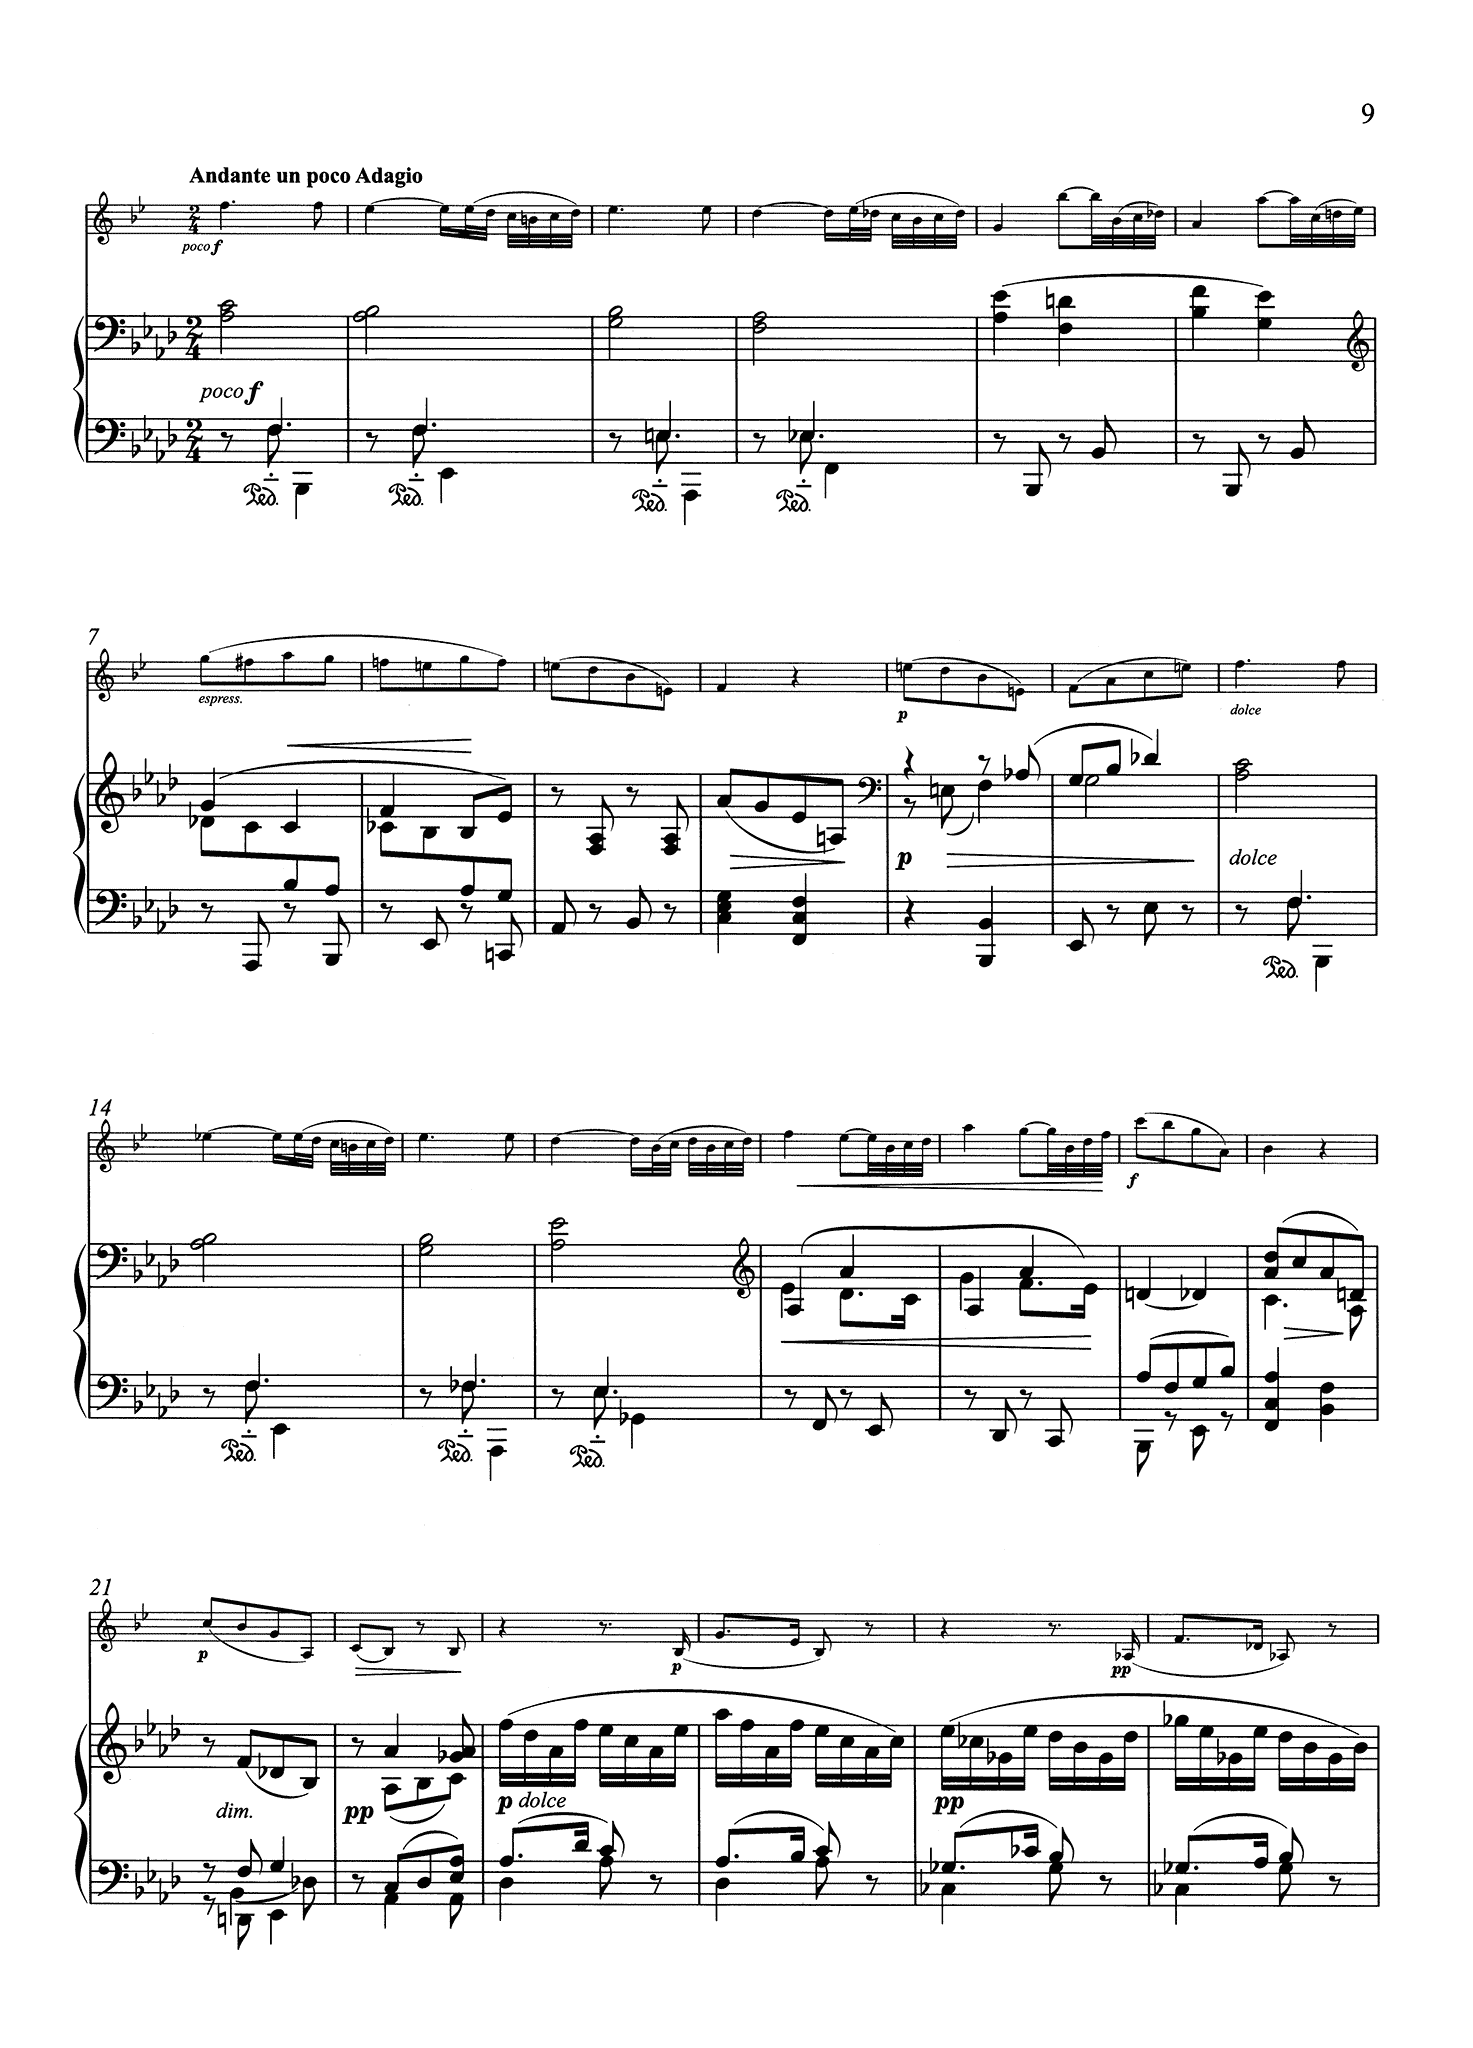 Sonata in F Minor, Op. 120 No. 1 - Piano score movement 2